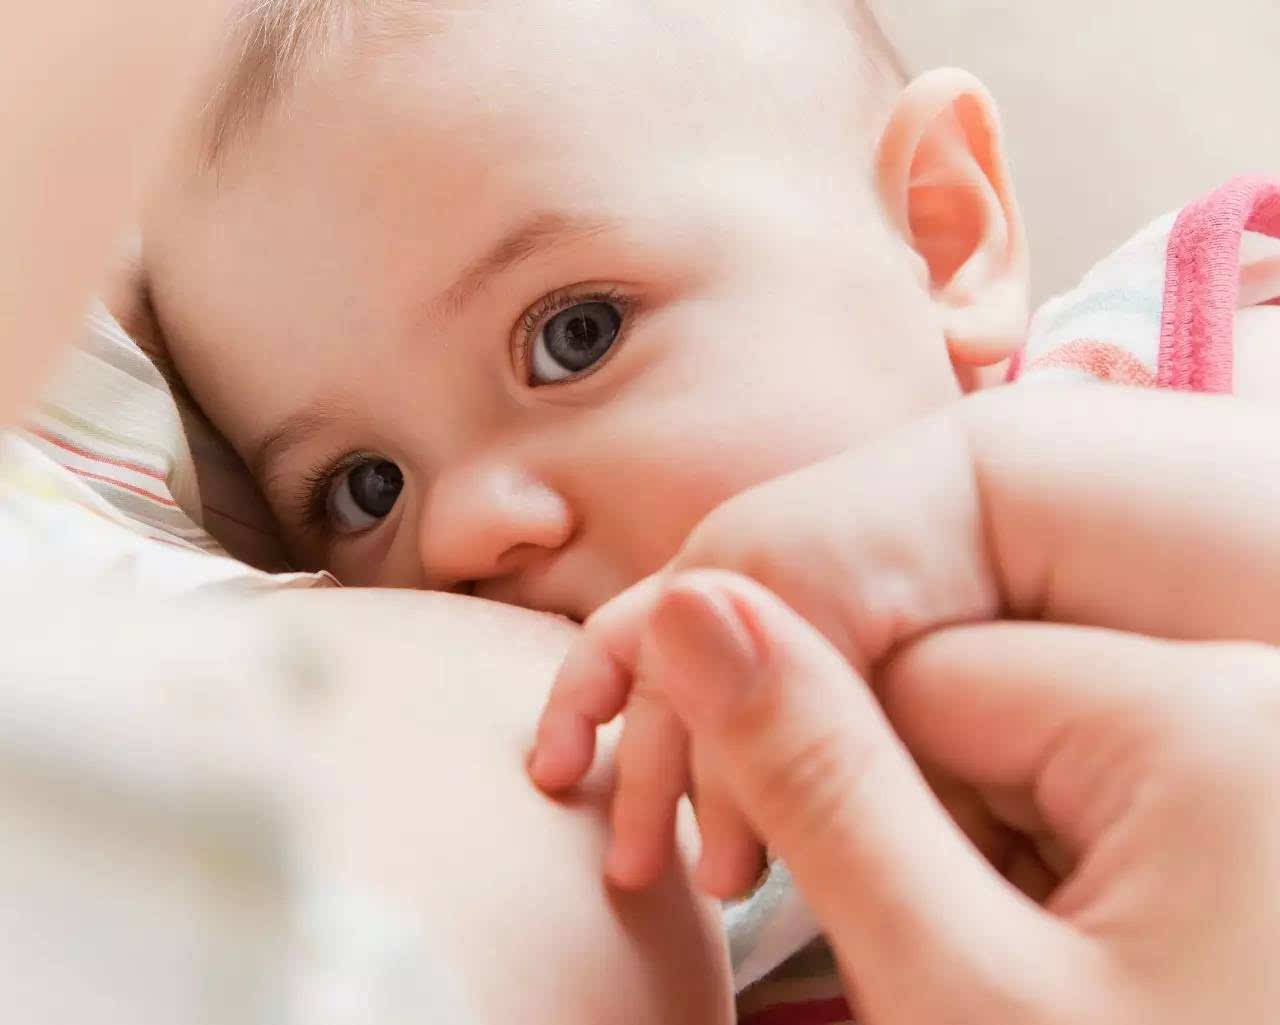 两个月大的婴儿在洗澡时哭泣图片下载 - 觅知网